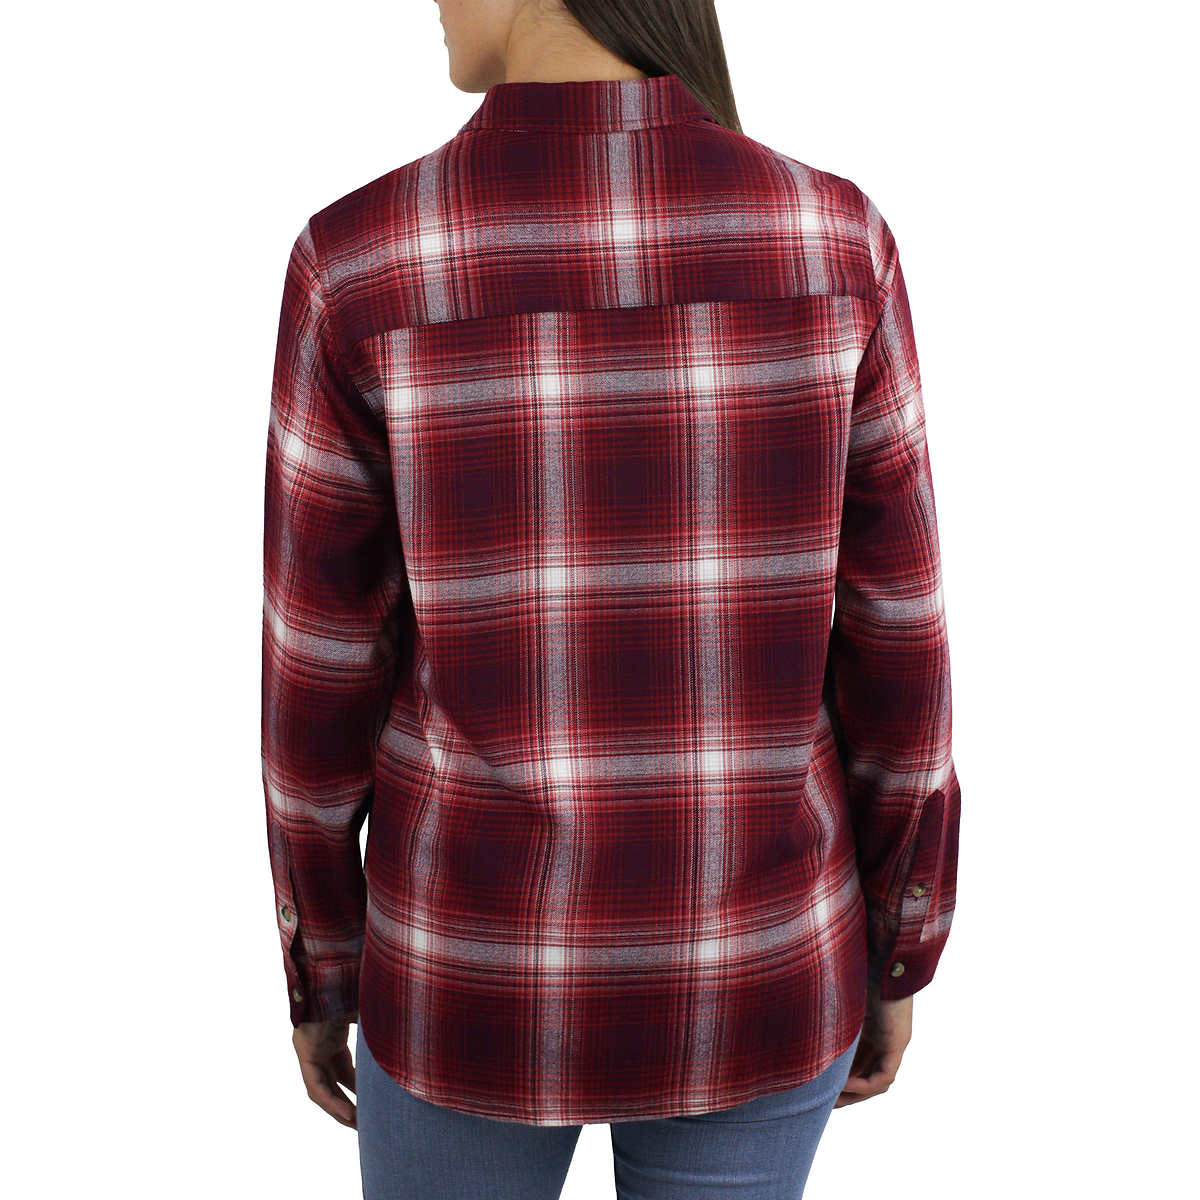 Jachs Girlfriend Women's' Super Soft Flannel Side Pockets Button Front Shirt